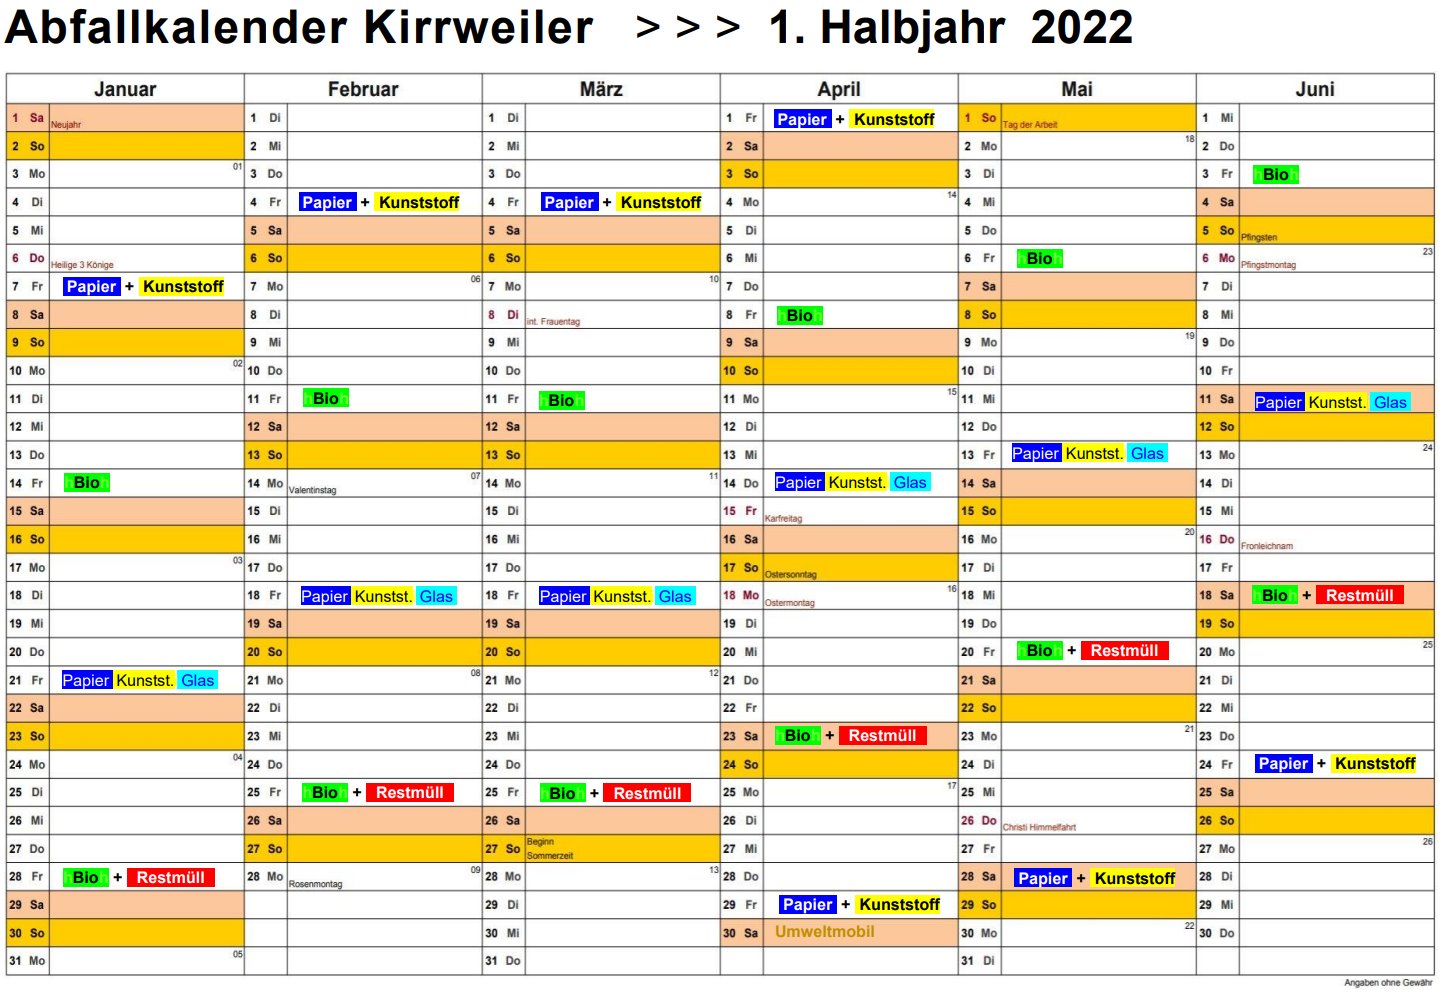 Ablage/Abfallkalender_Kirrweiler_1-Halbjahr_2022:PDF